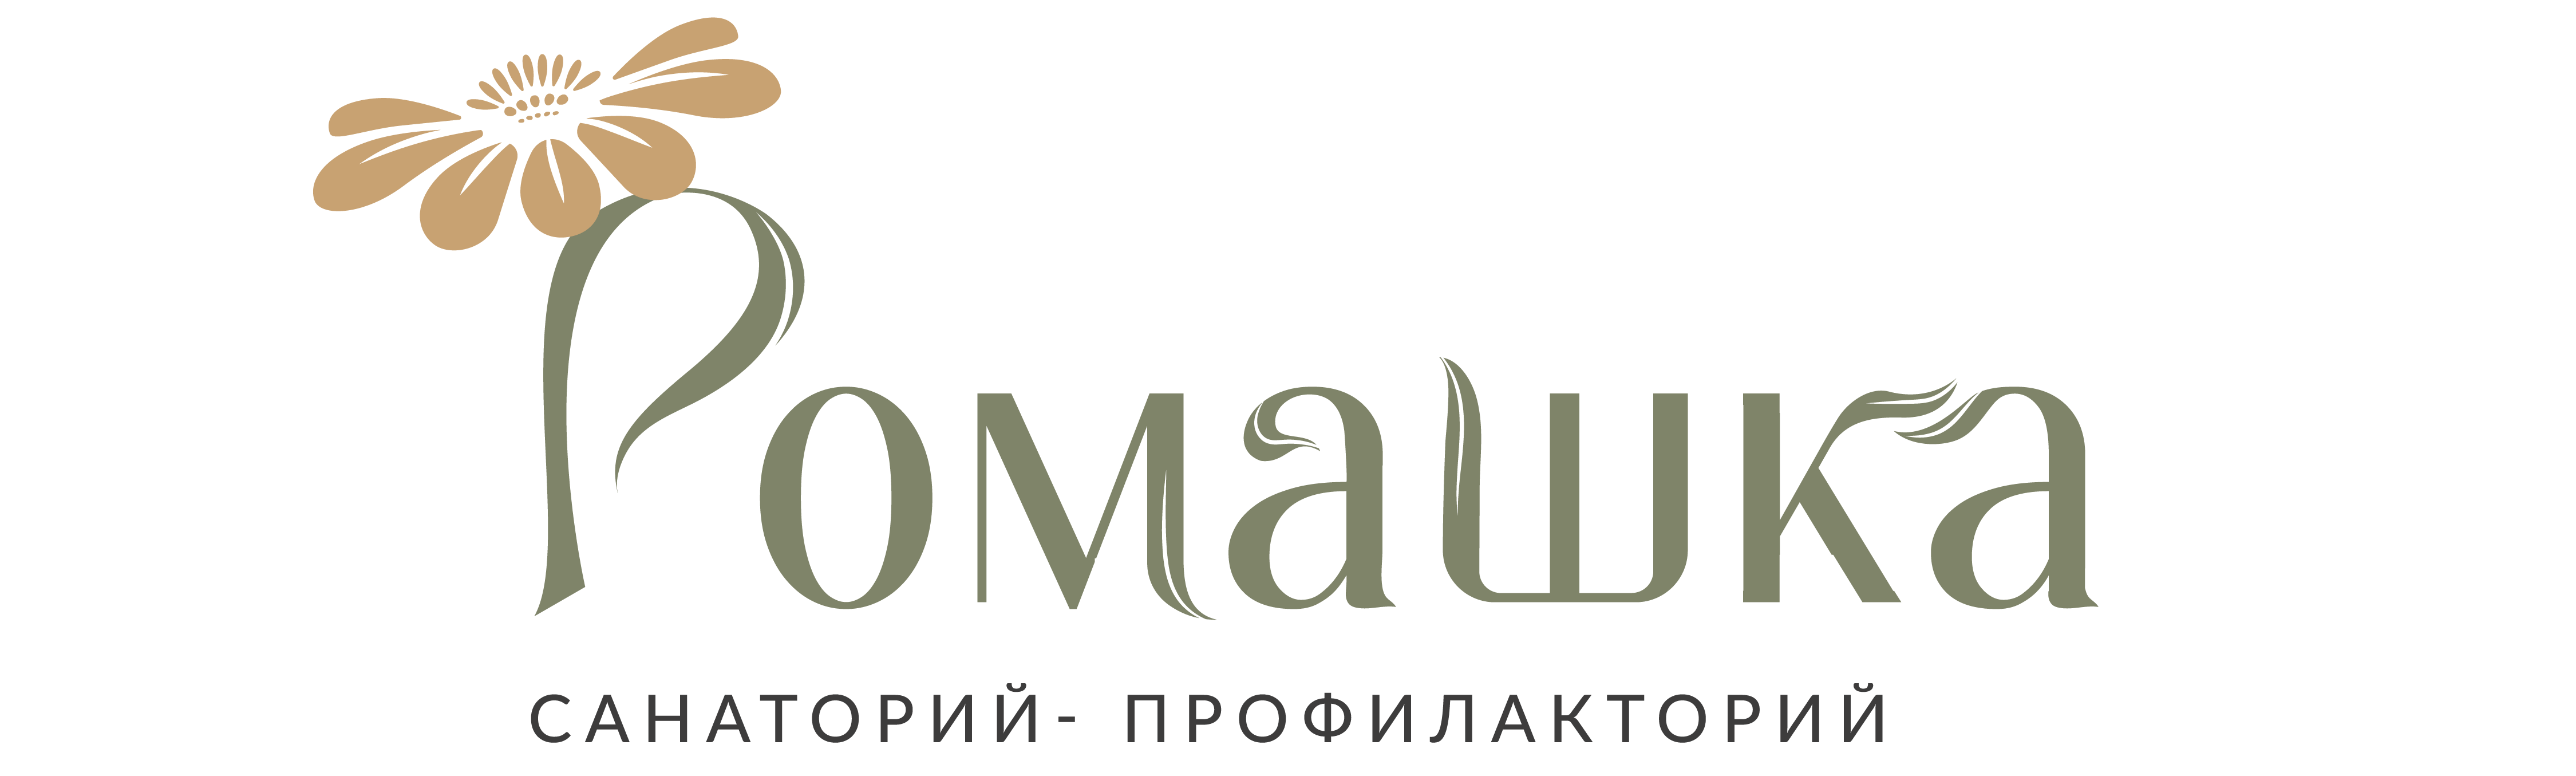 Санаторий-профилакторий "Ромашка", г.Таштагол — официальный сайт